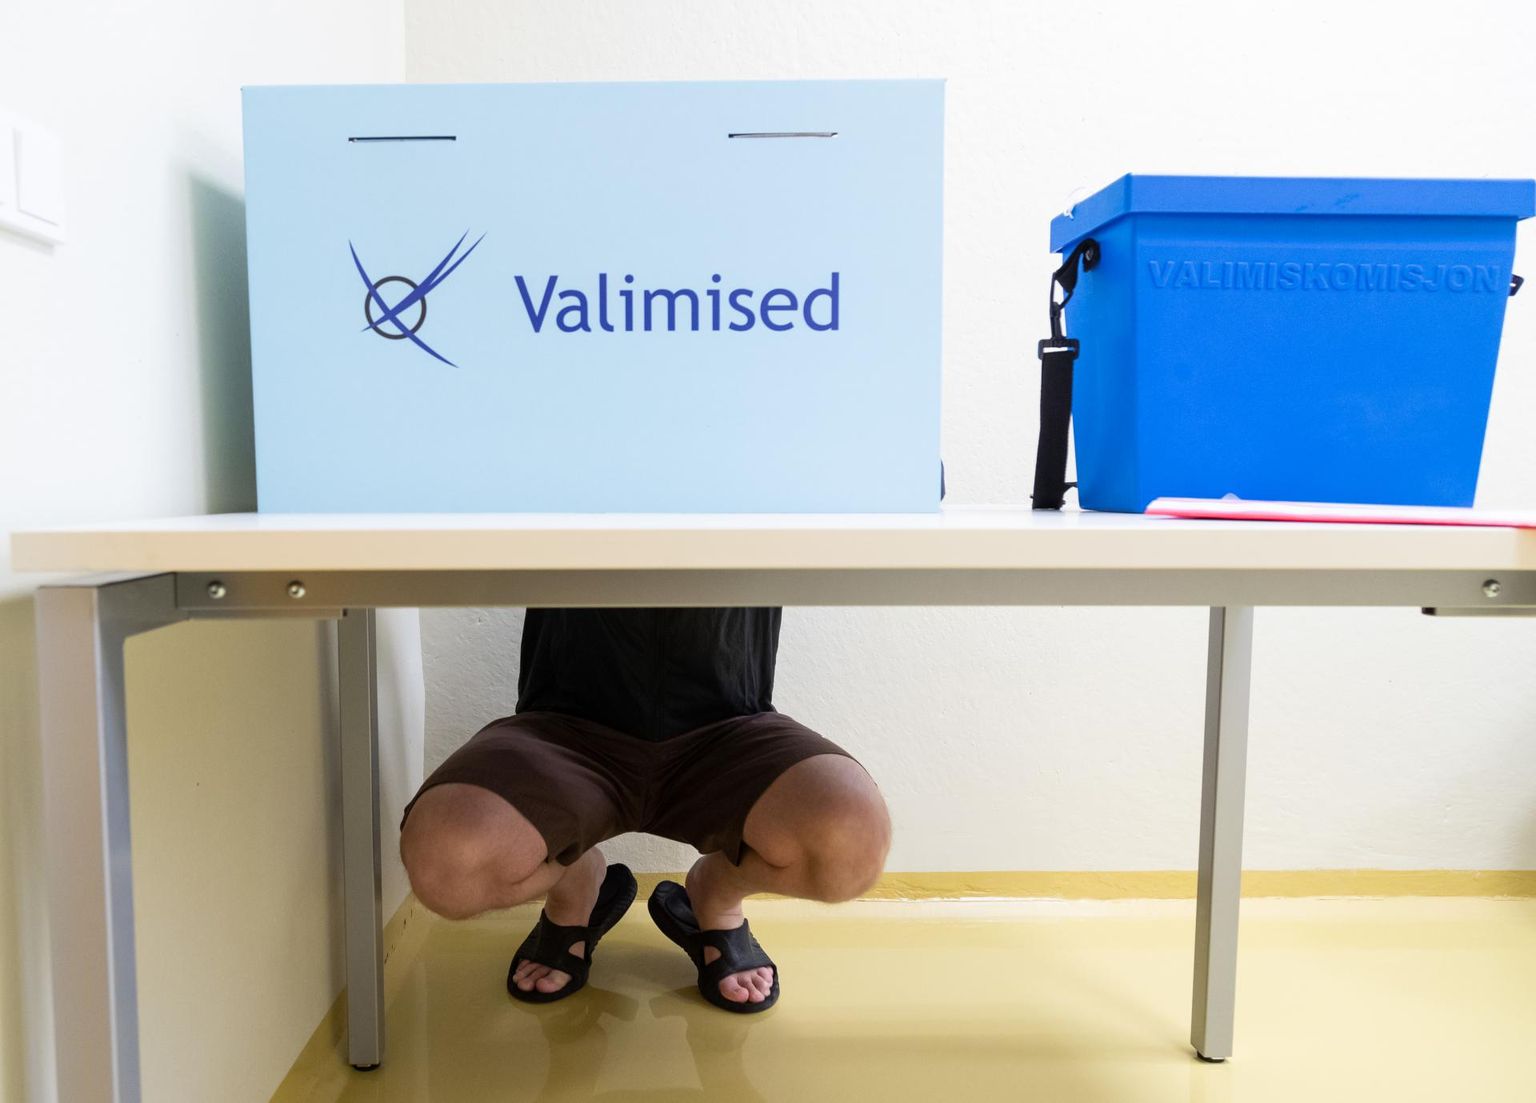 Stiilinäide riigikogu valimistest Tallinna arestimajas. Lisaks oli võimalik eelhääletada kodus, haiglas, ööpäevases hoolekandeasutuses, laeval, välisriigis, kirja teel ning elektrooniliselt.